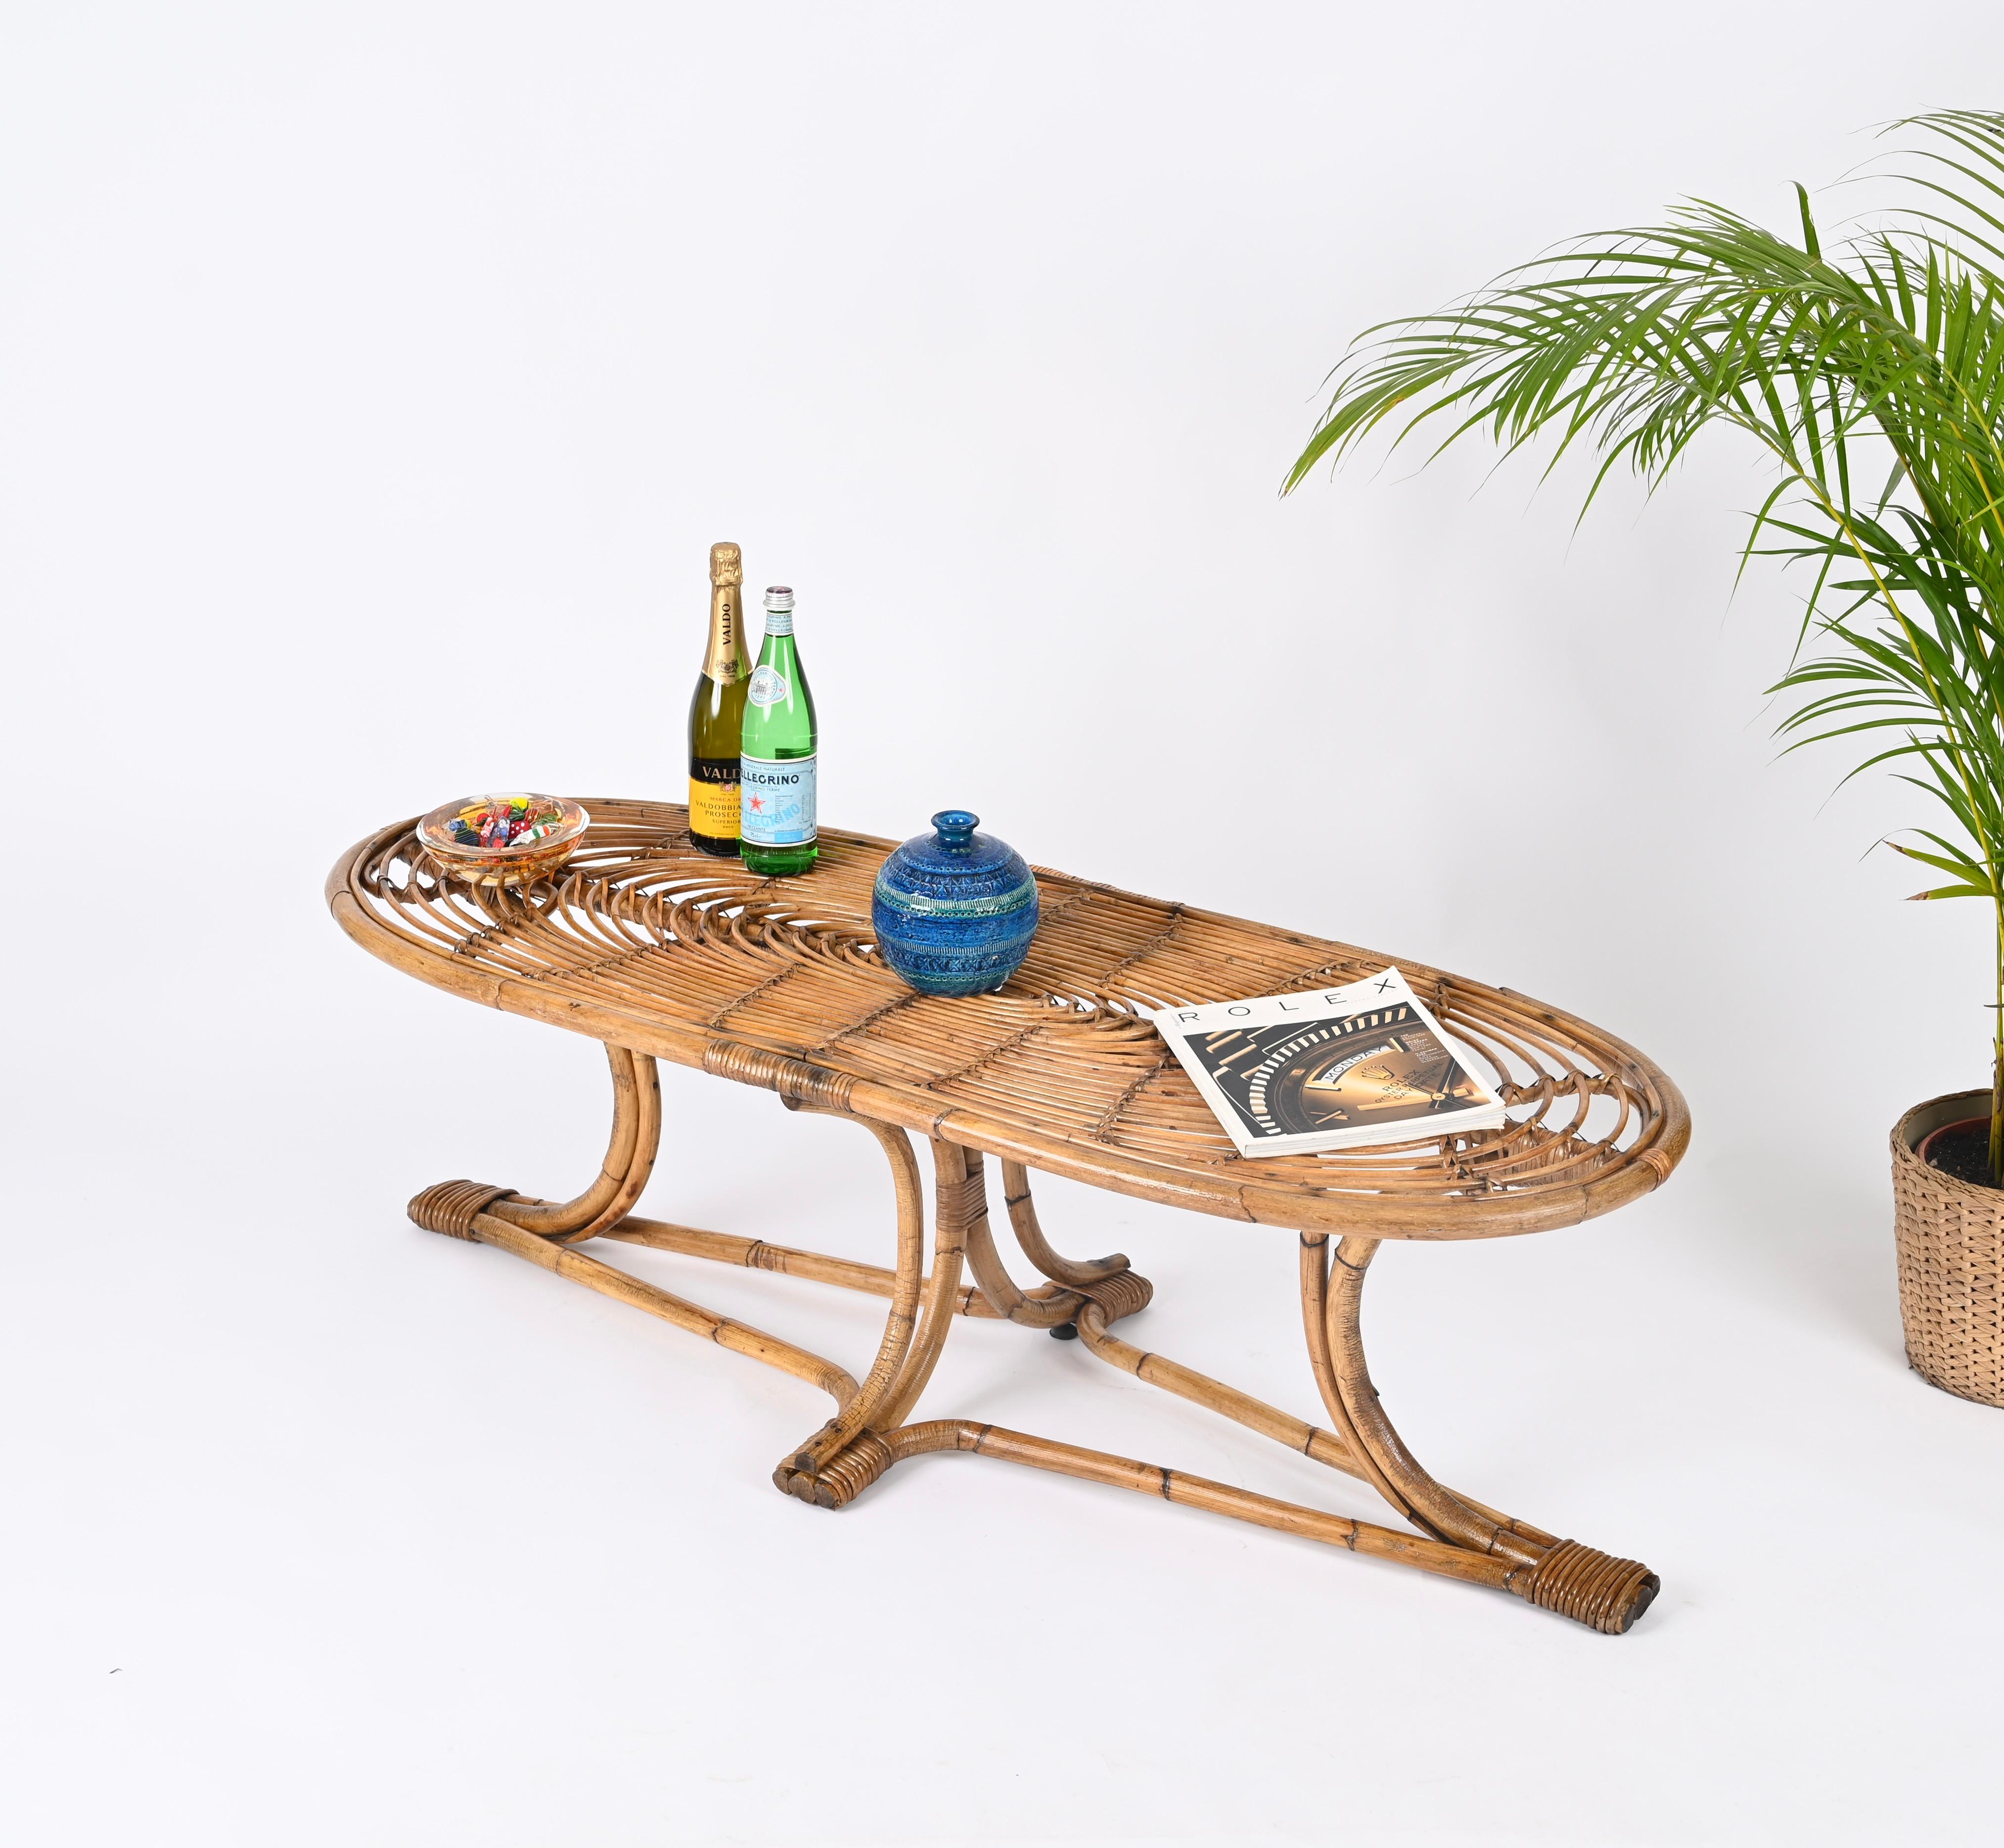 Merveilleuse grande table basse entièrement réalisée en bambou courbé, rotin et osier tressé à la main. Cette pièce fantastique et unique a été réalisée en Italie dans les années 1970. 

La table se caractérise par une base étonnante composée de